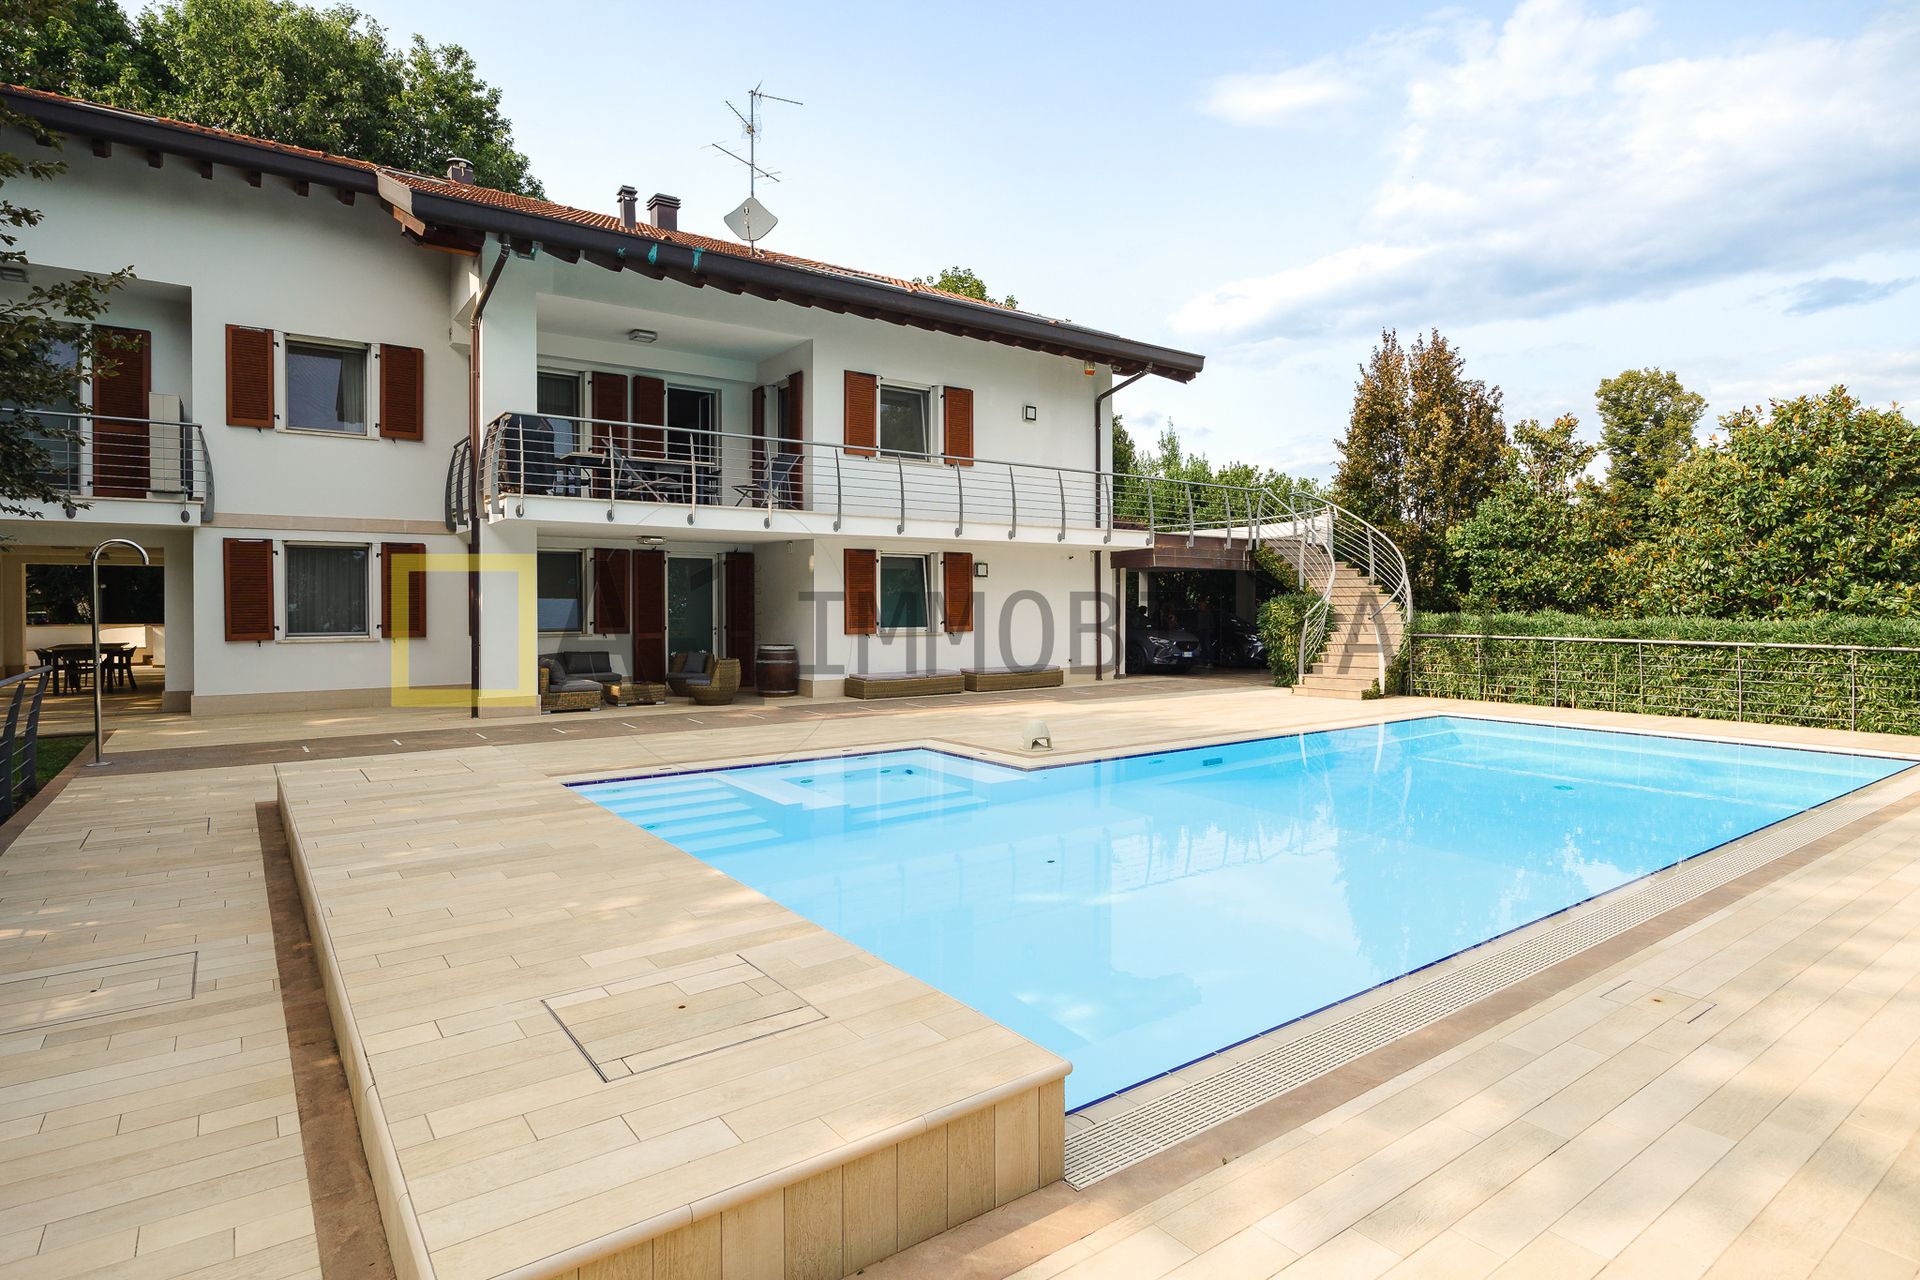 For sale villa by the lake Monticello Brianza Lombardia